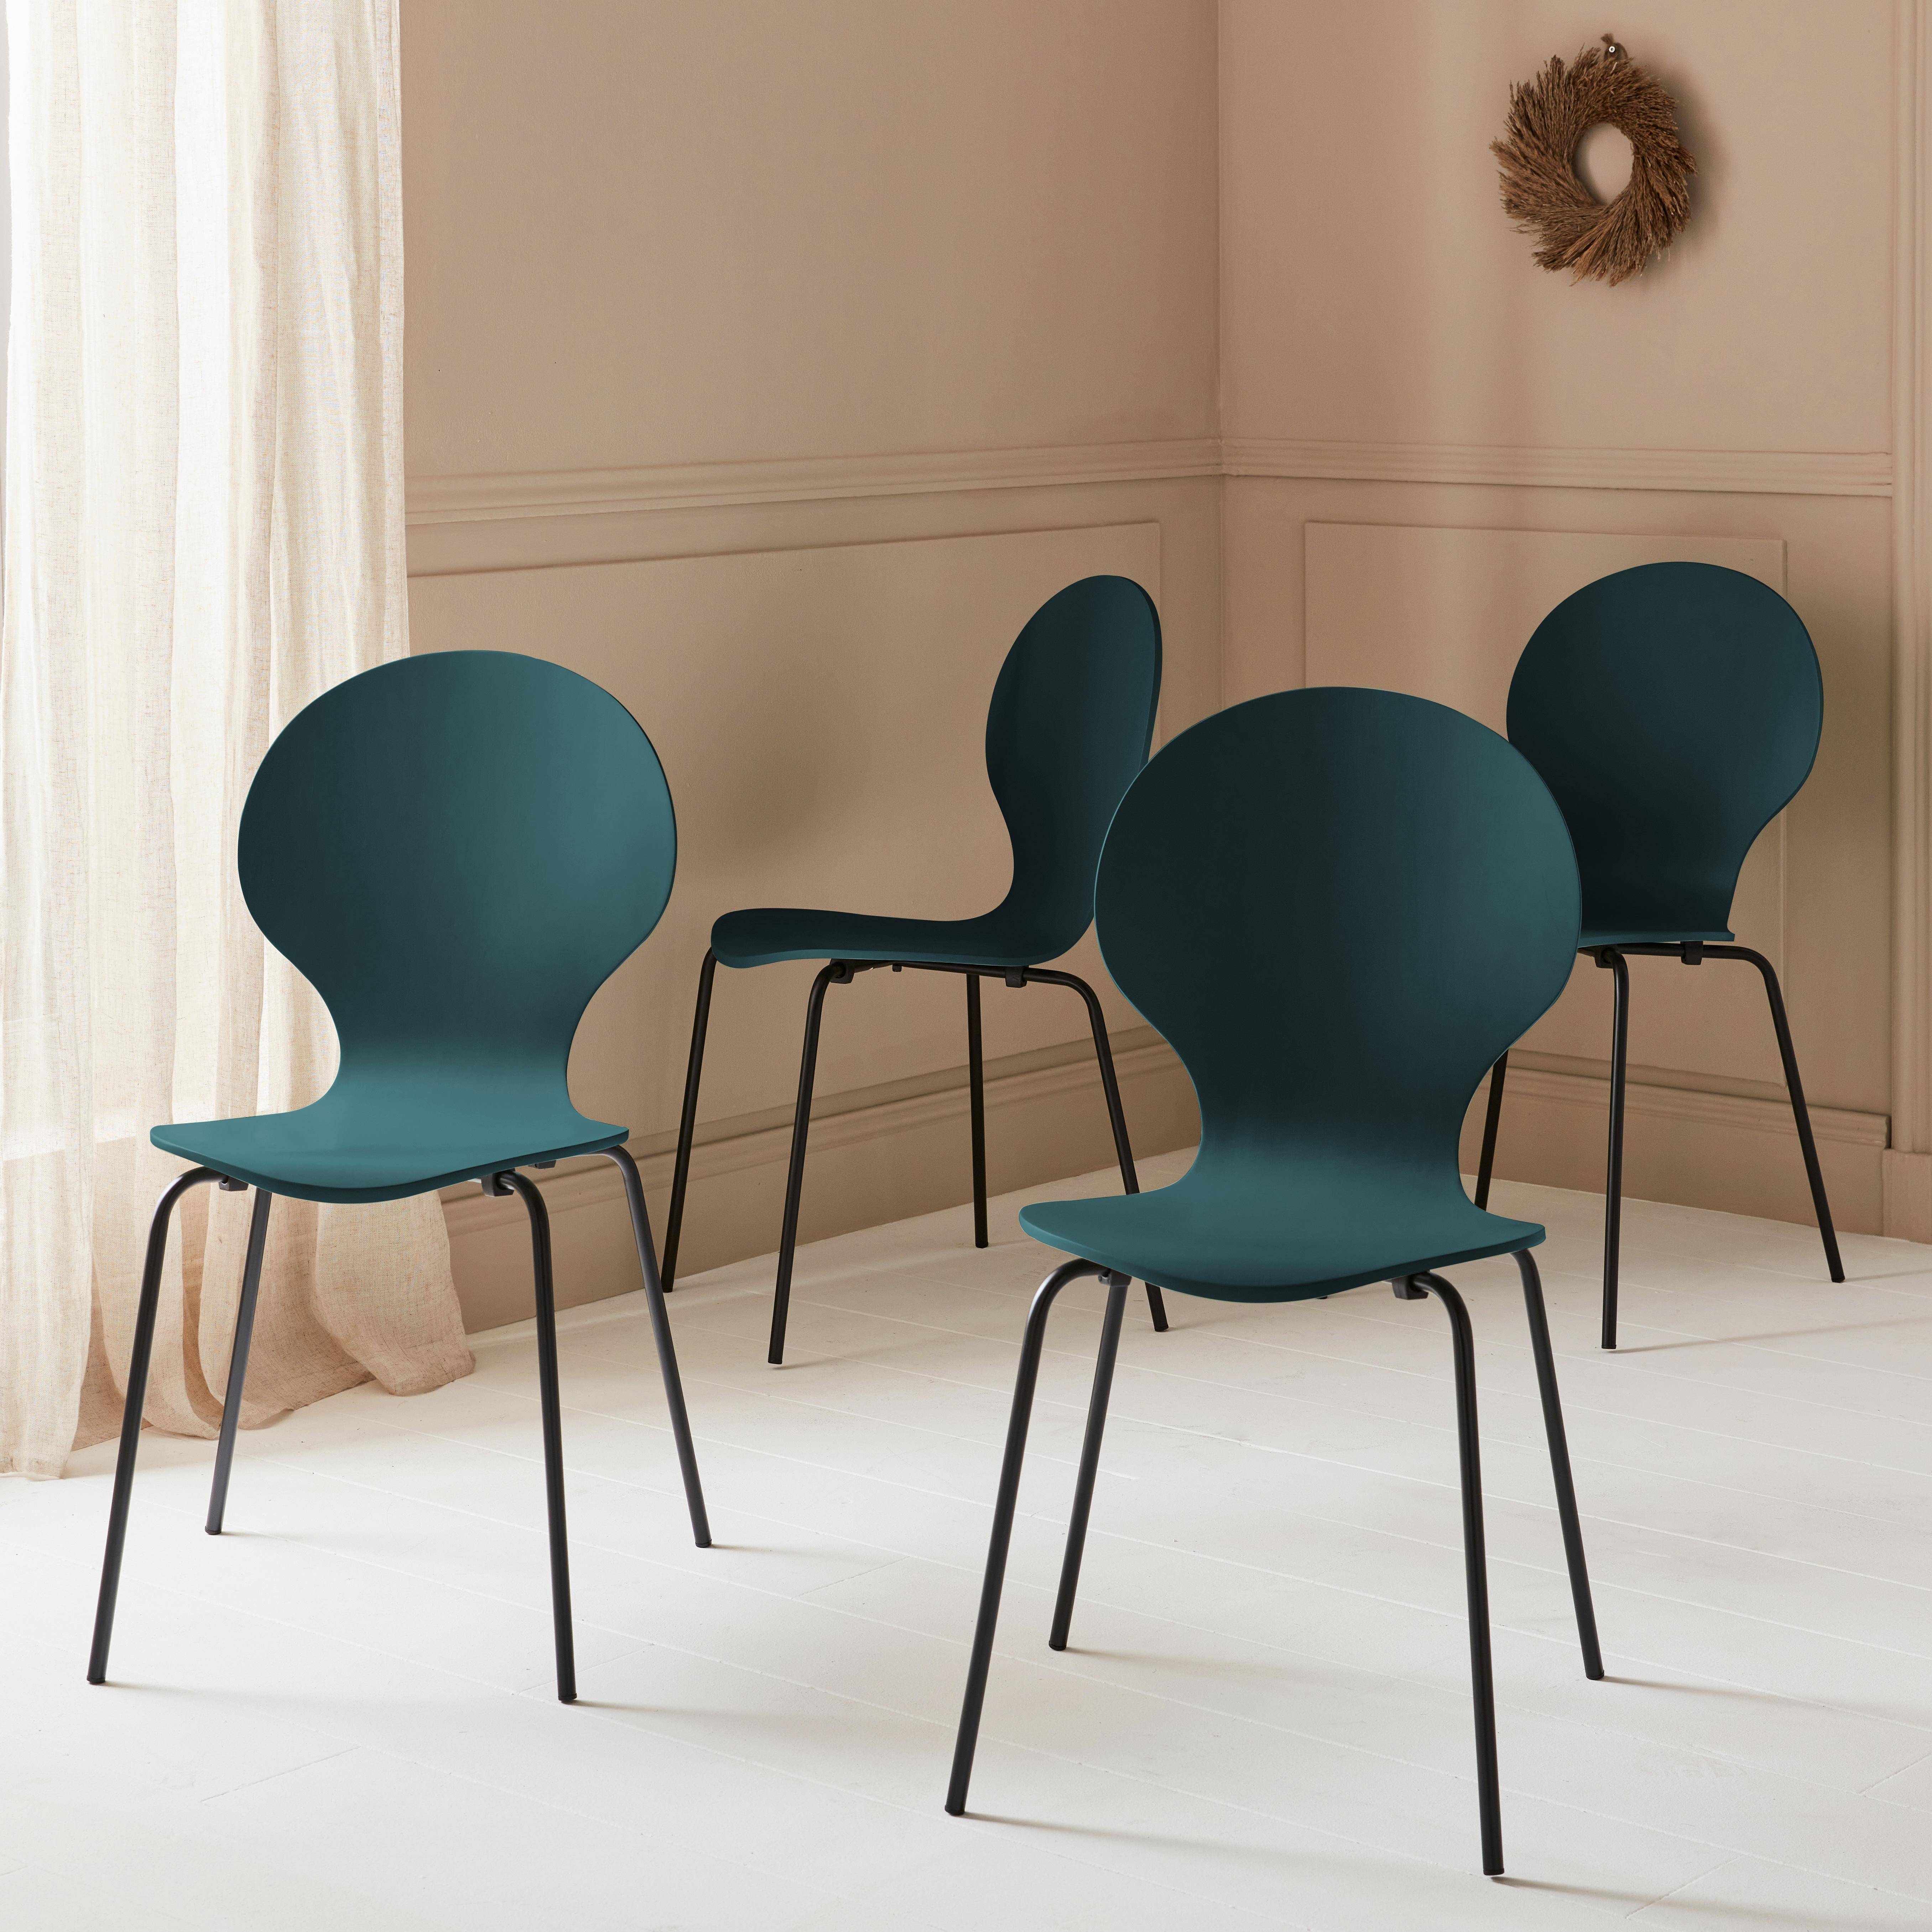 4er Set stapelbare Retro-Stühle in blau, Hevea-Holz und Sperrholz, Beine aus Stahl, Naomi, B 43 x T 48 x H 87cm Photo1